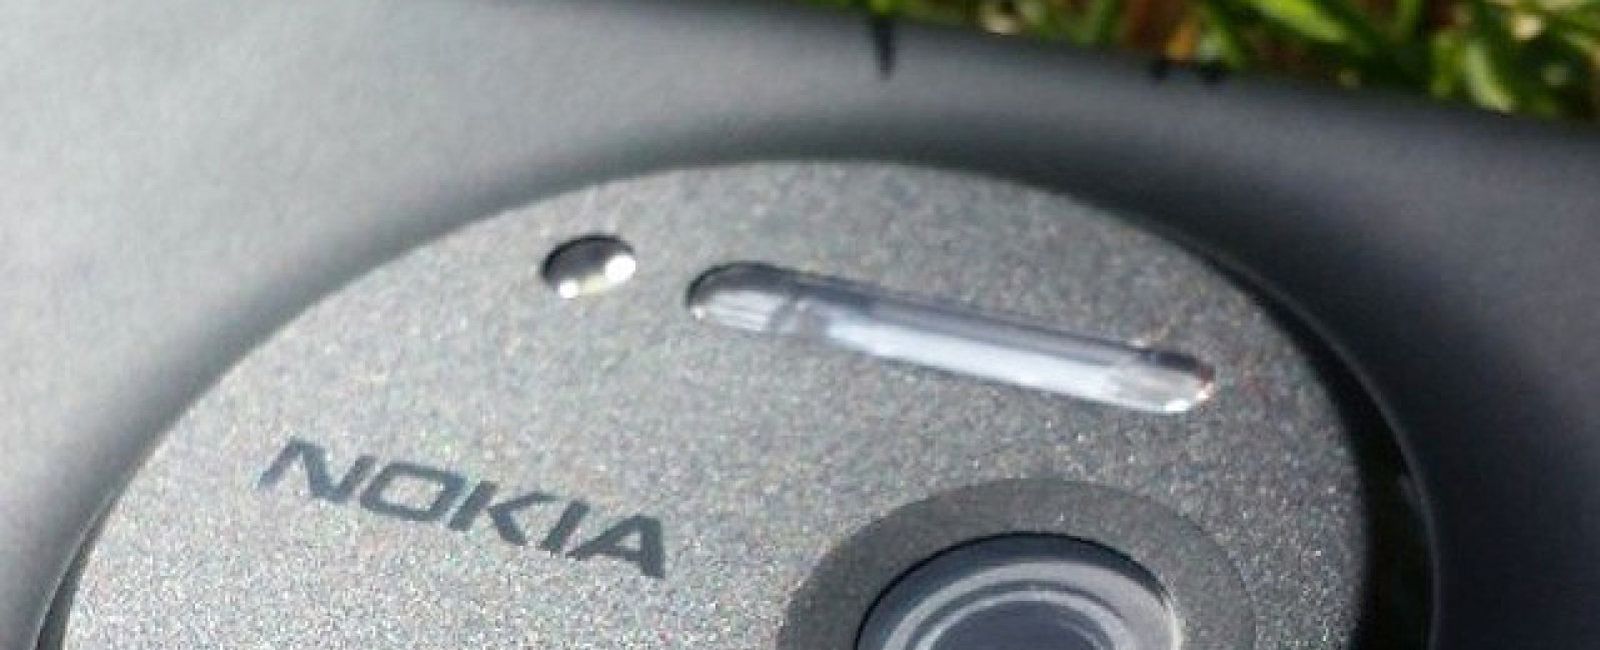 Foto: Nokia lleva al límite su apuesta por la imagen con un móvil de 41 megapíxeles